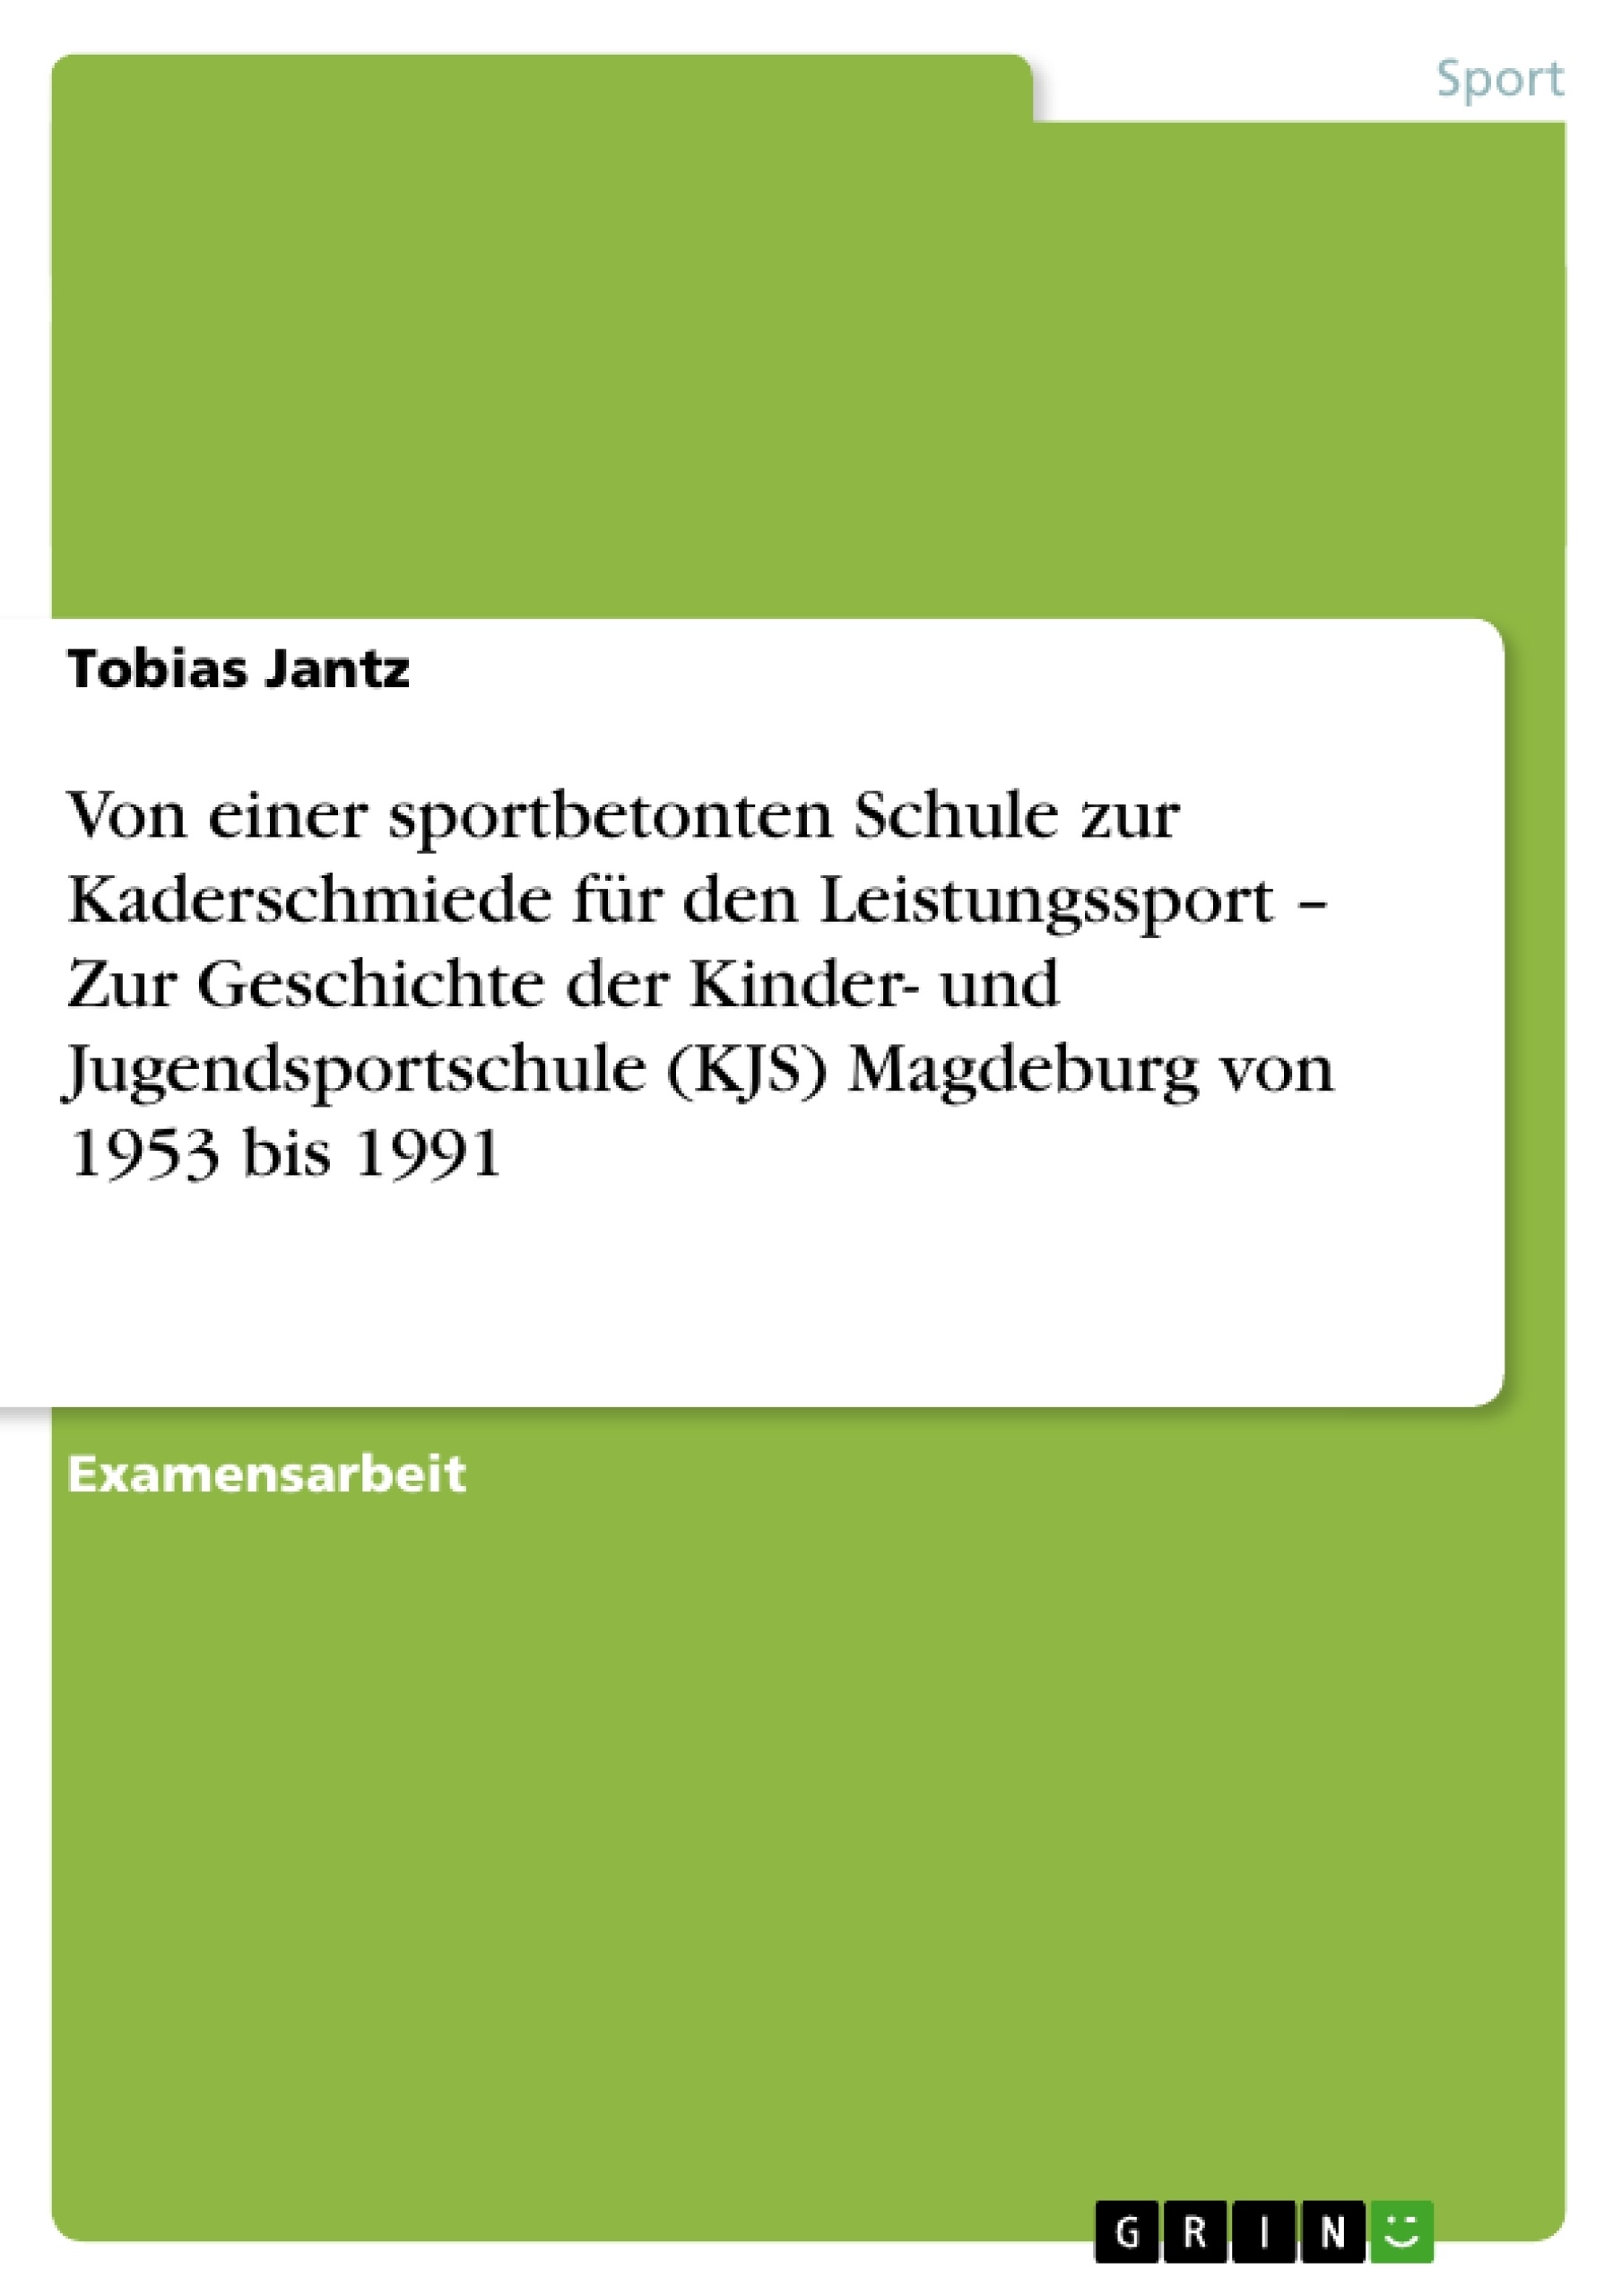 Titel: Von einer sportbetonten Schule zur Kaderschmiede für den Leistungssport – Zur Geschichte der Kinder- und Jugendsportschule (KJS)  Magdeburg von 1953 bis 1991 